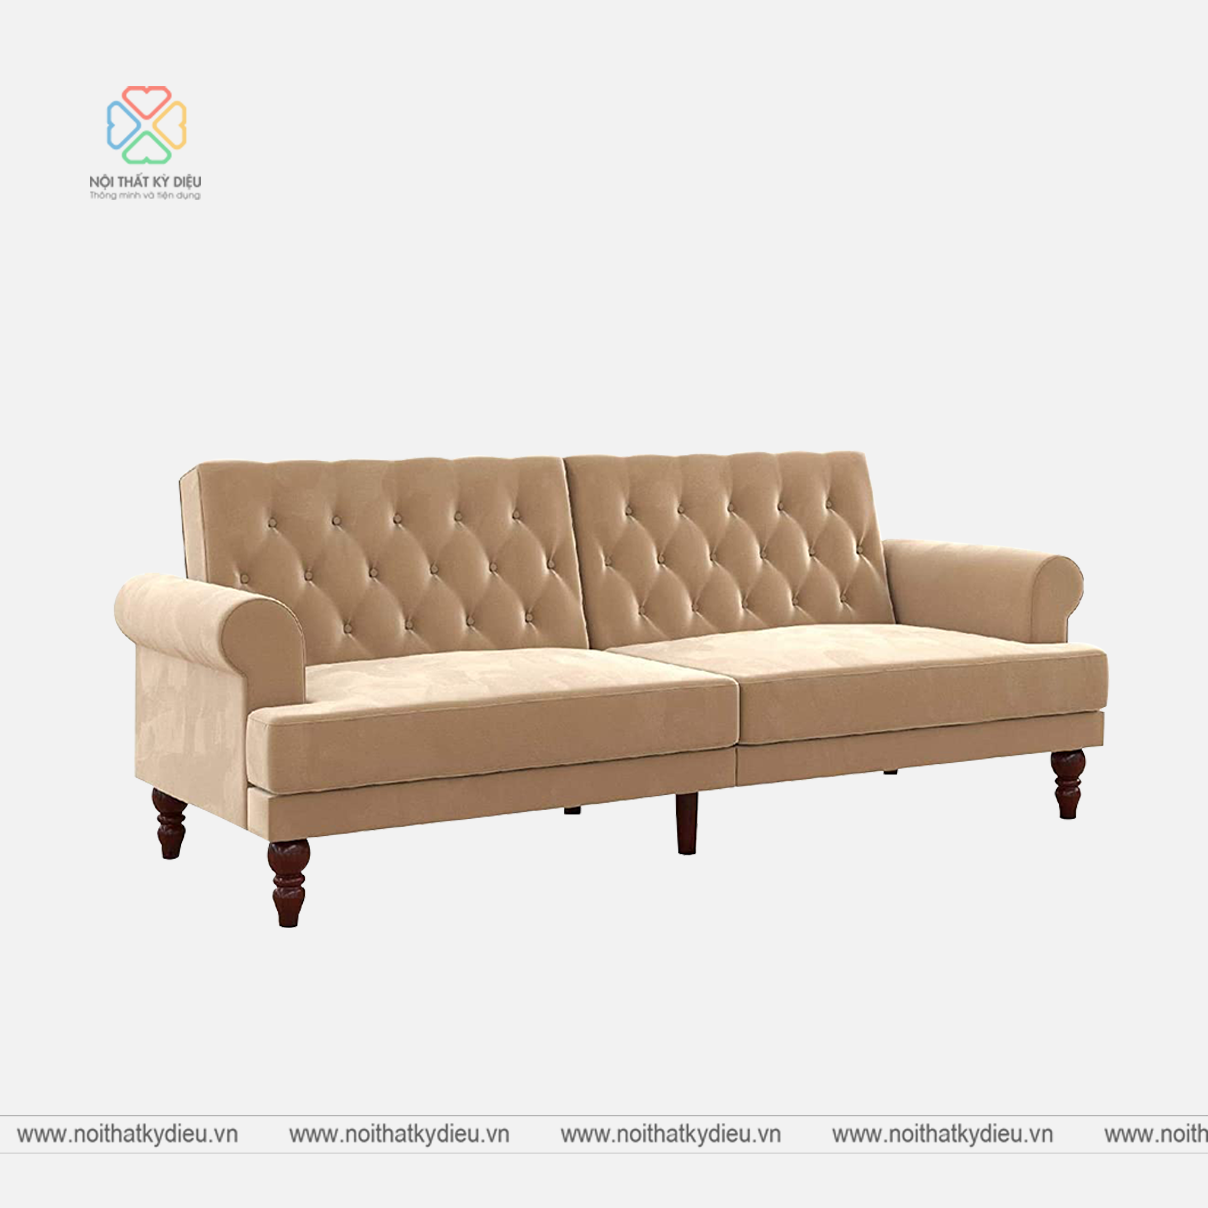 Những mẫu Ghế sofa giường ngủ rất đa dạng công năng